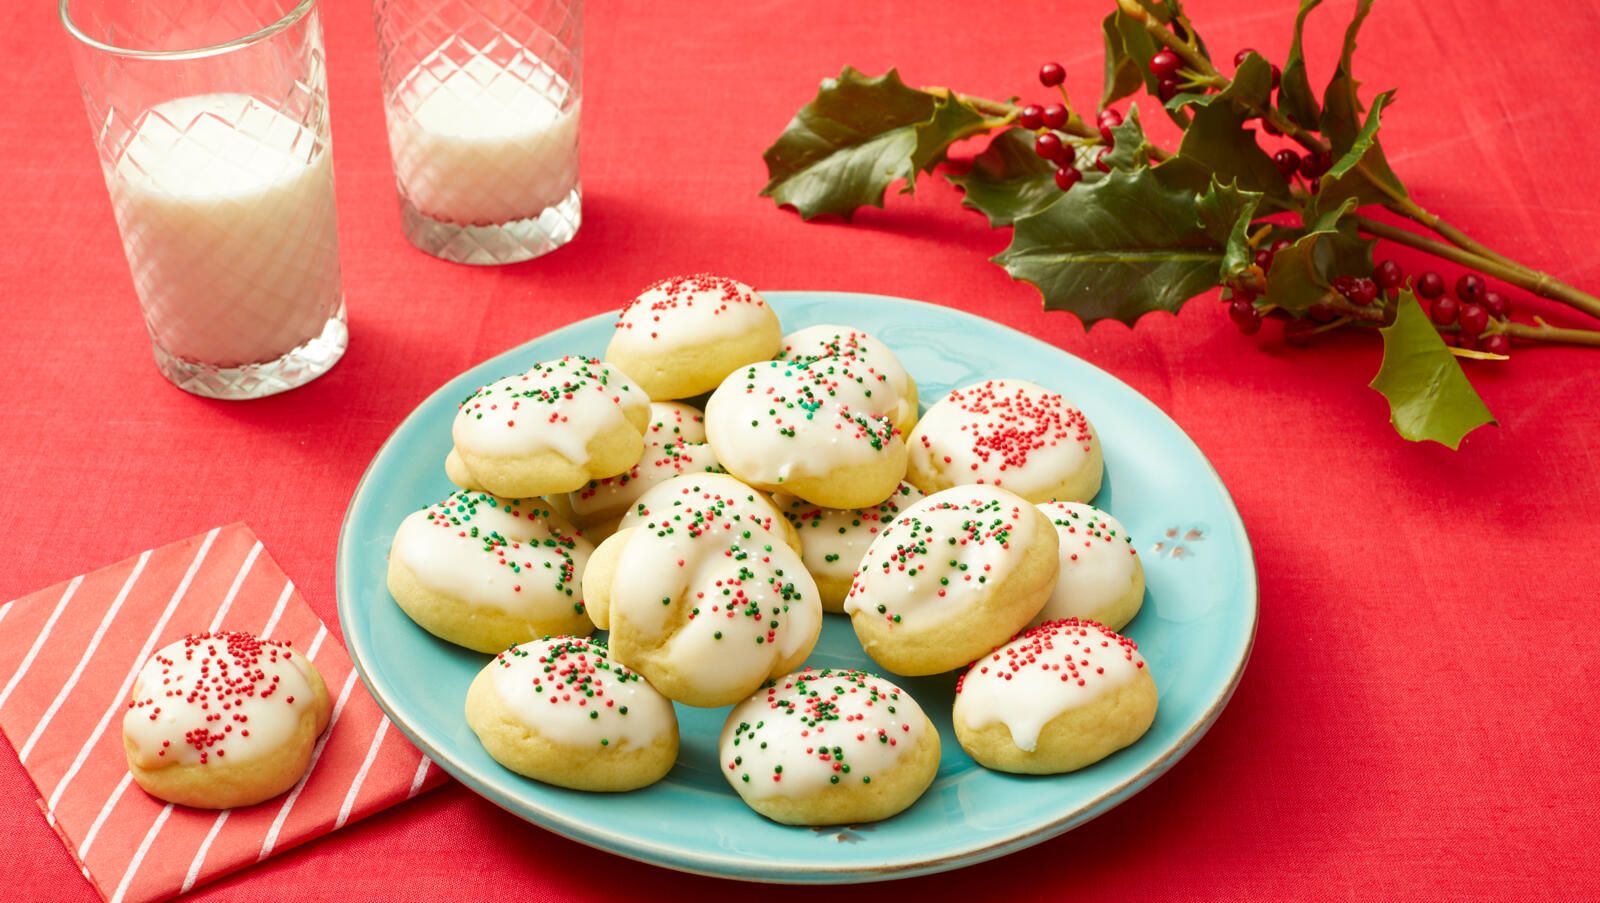 Ree Drummond's Favorite Christmas Cookies - Best Christmas Sugar